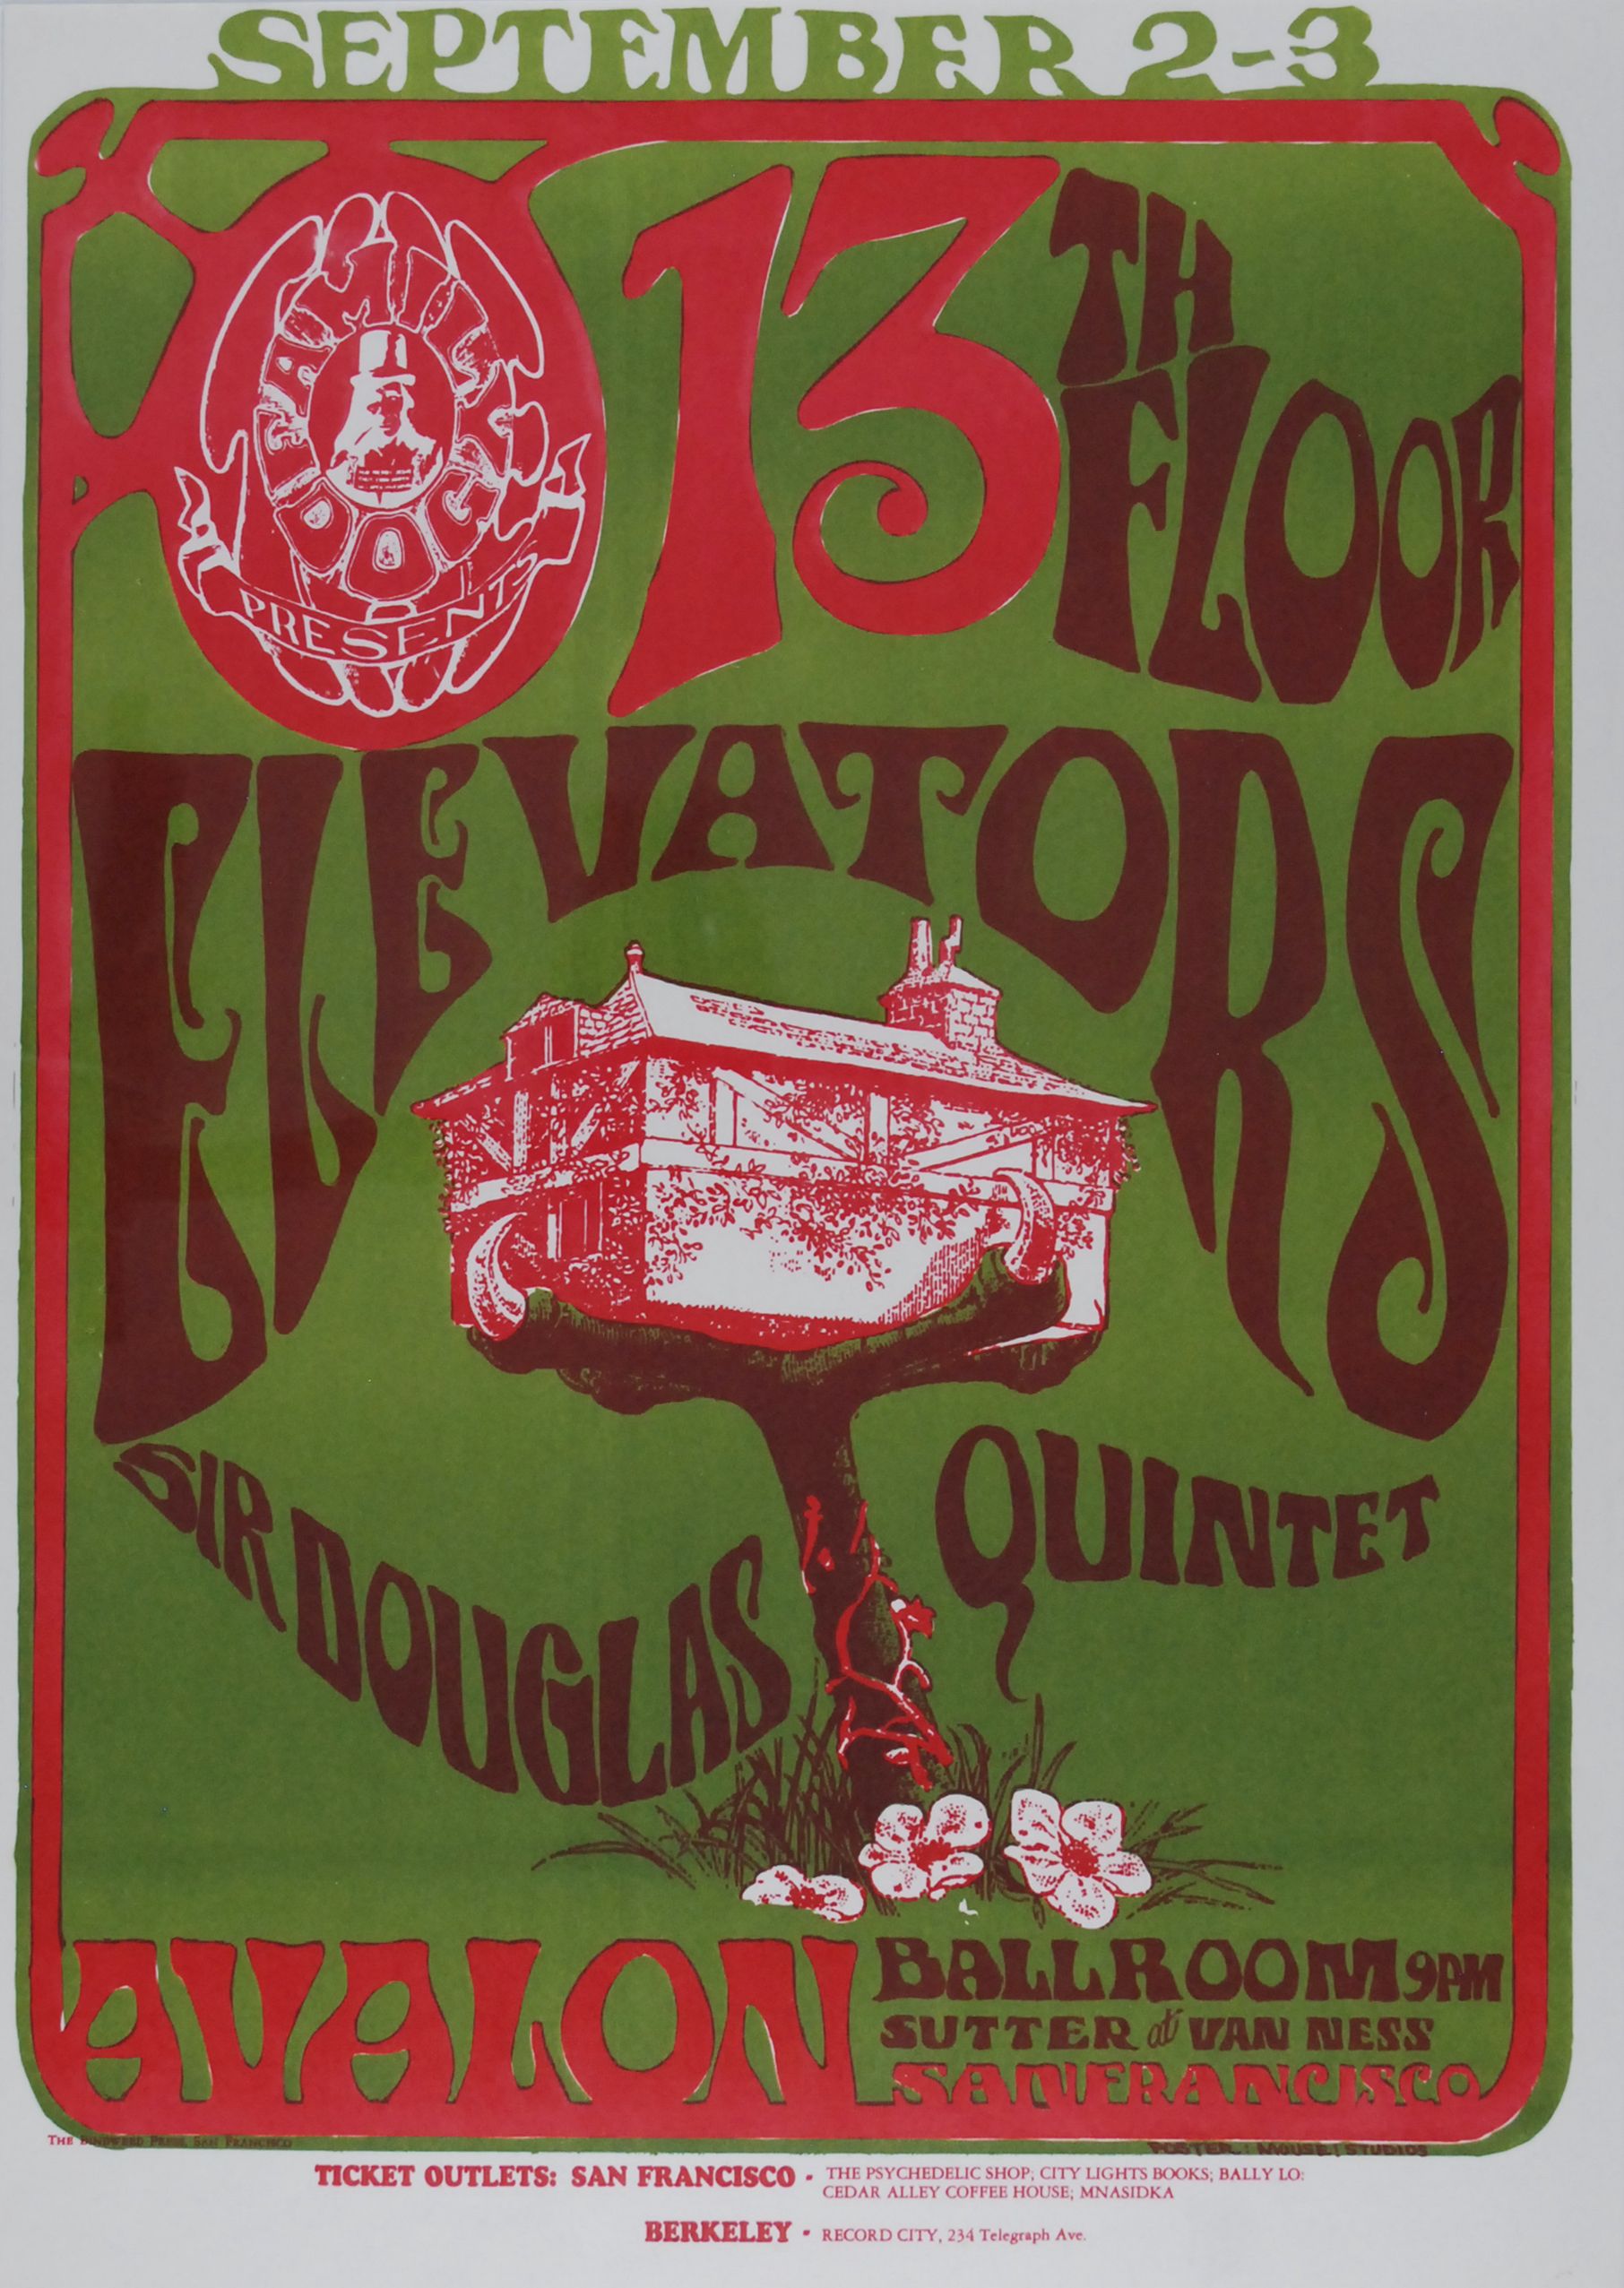 FD-24-OP-1 Concert Poster